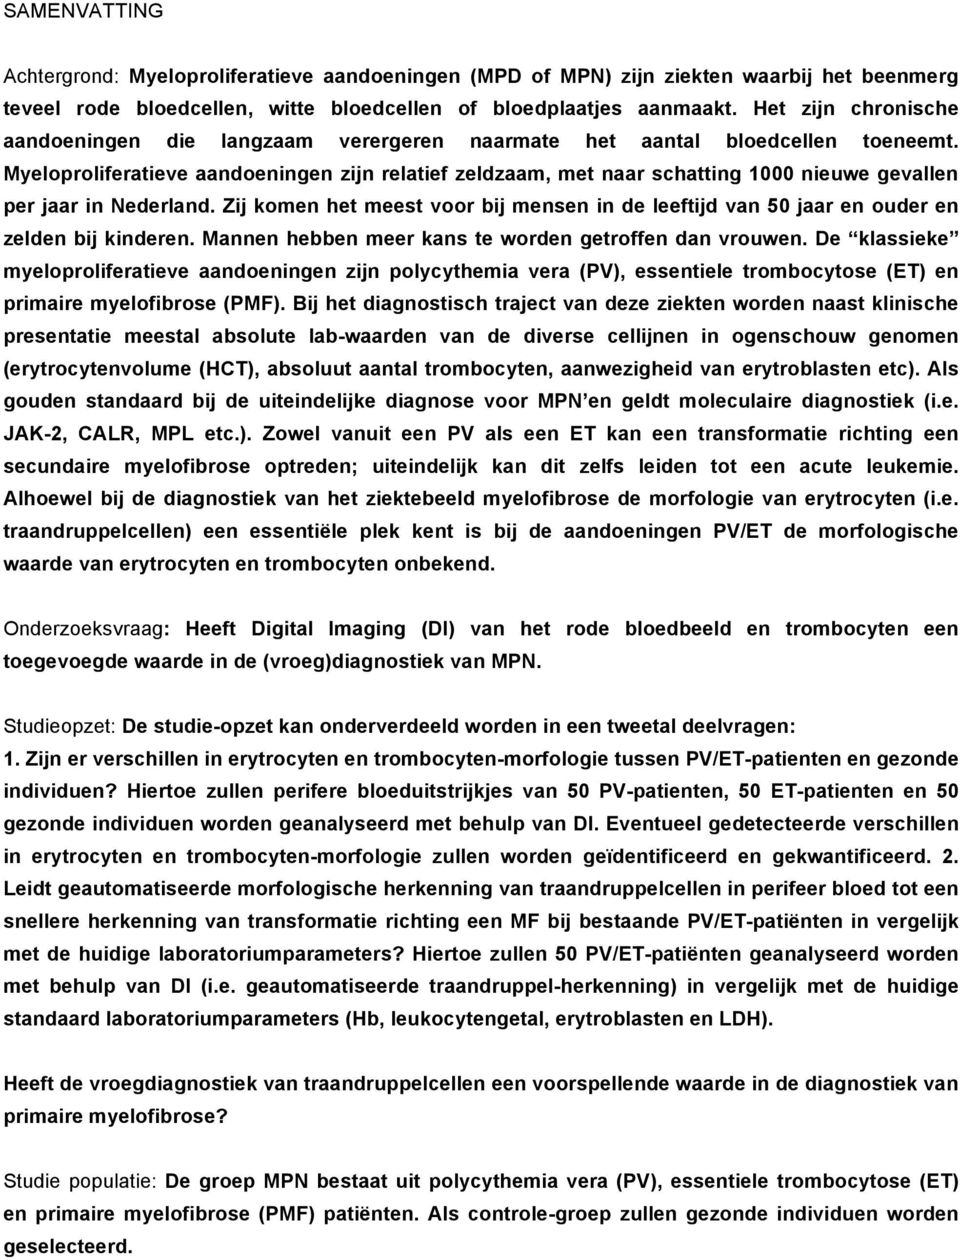 Myeloproliferatieve aandoeningen zijn relatief zeldzaam, met naar schatting 1000 nieuwe gevallen per jaar in Nederland.